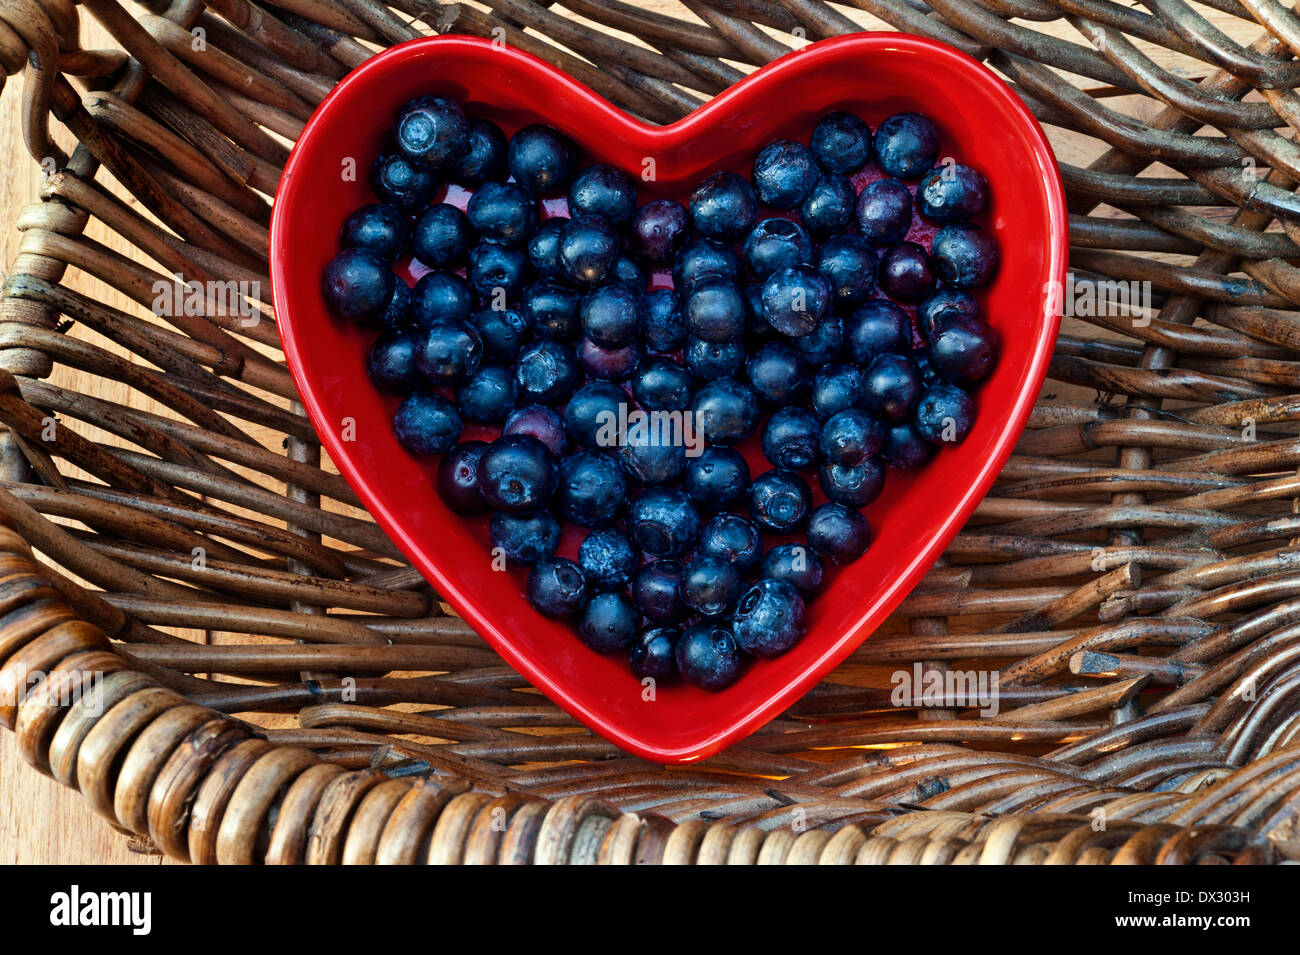 Heidelbeeren Herz gesundes Herz Konzept/Blaubeeren in einem roten herzförmigen Gericht, das in einem traditionellen Weidenkorb Stockfoto